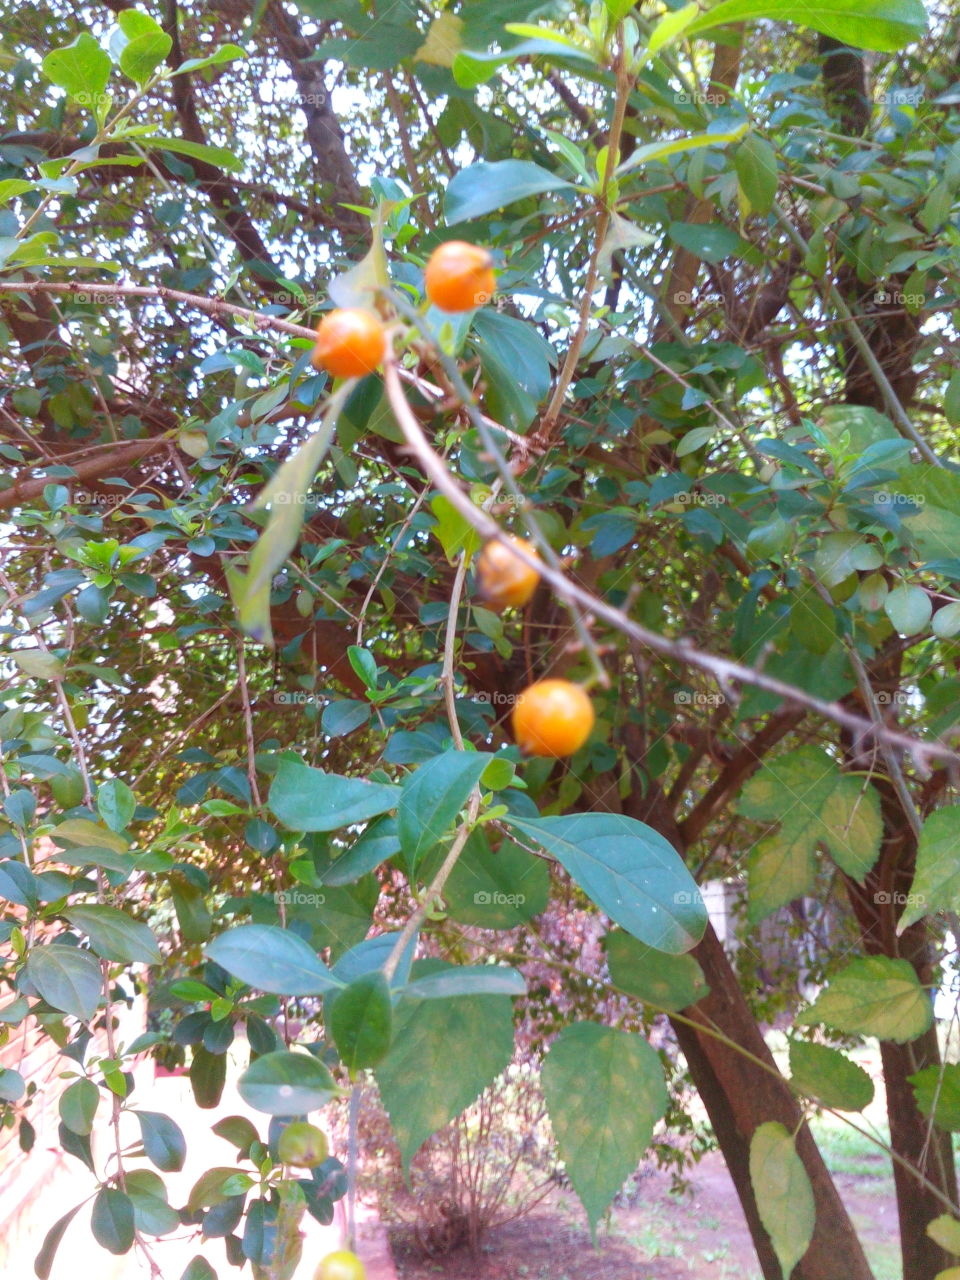 Plant with orange berries.